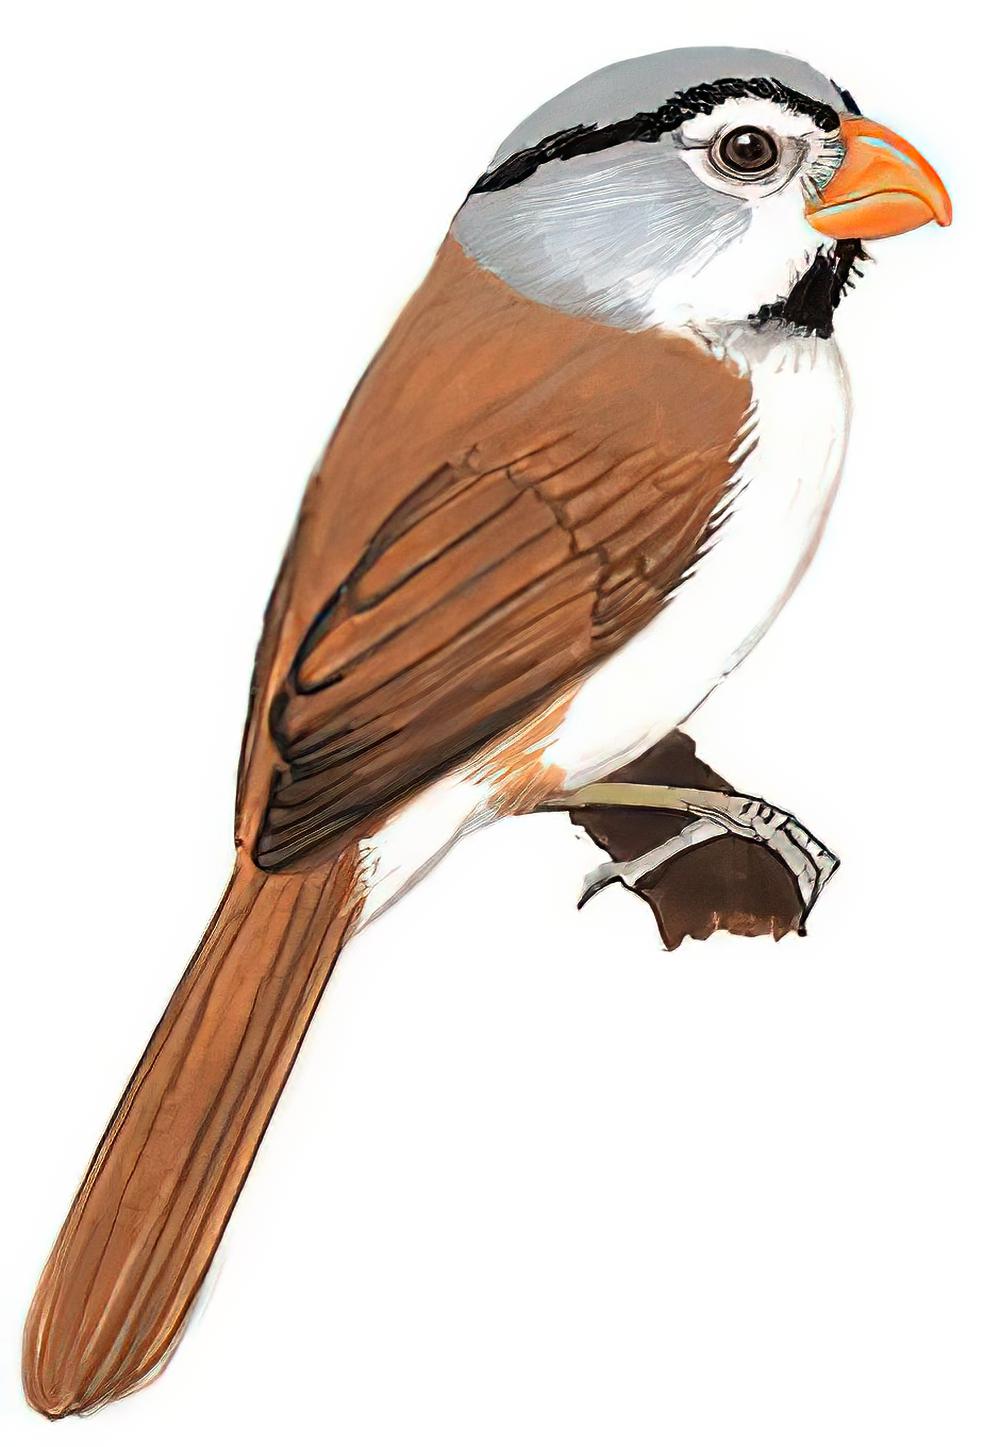 灰头鸦雀 / Grey-headed Parrotbill / Psittiparus gularis